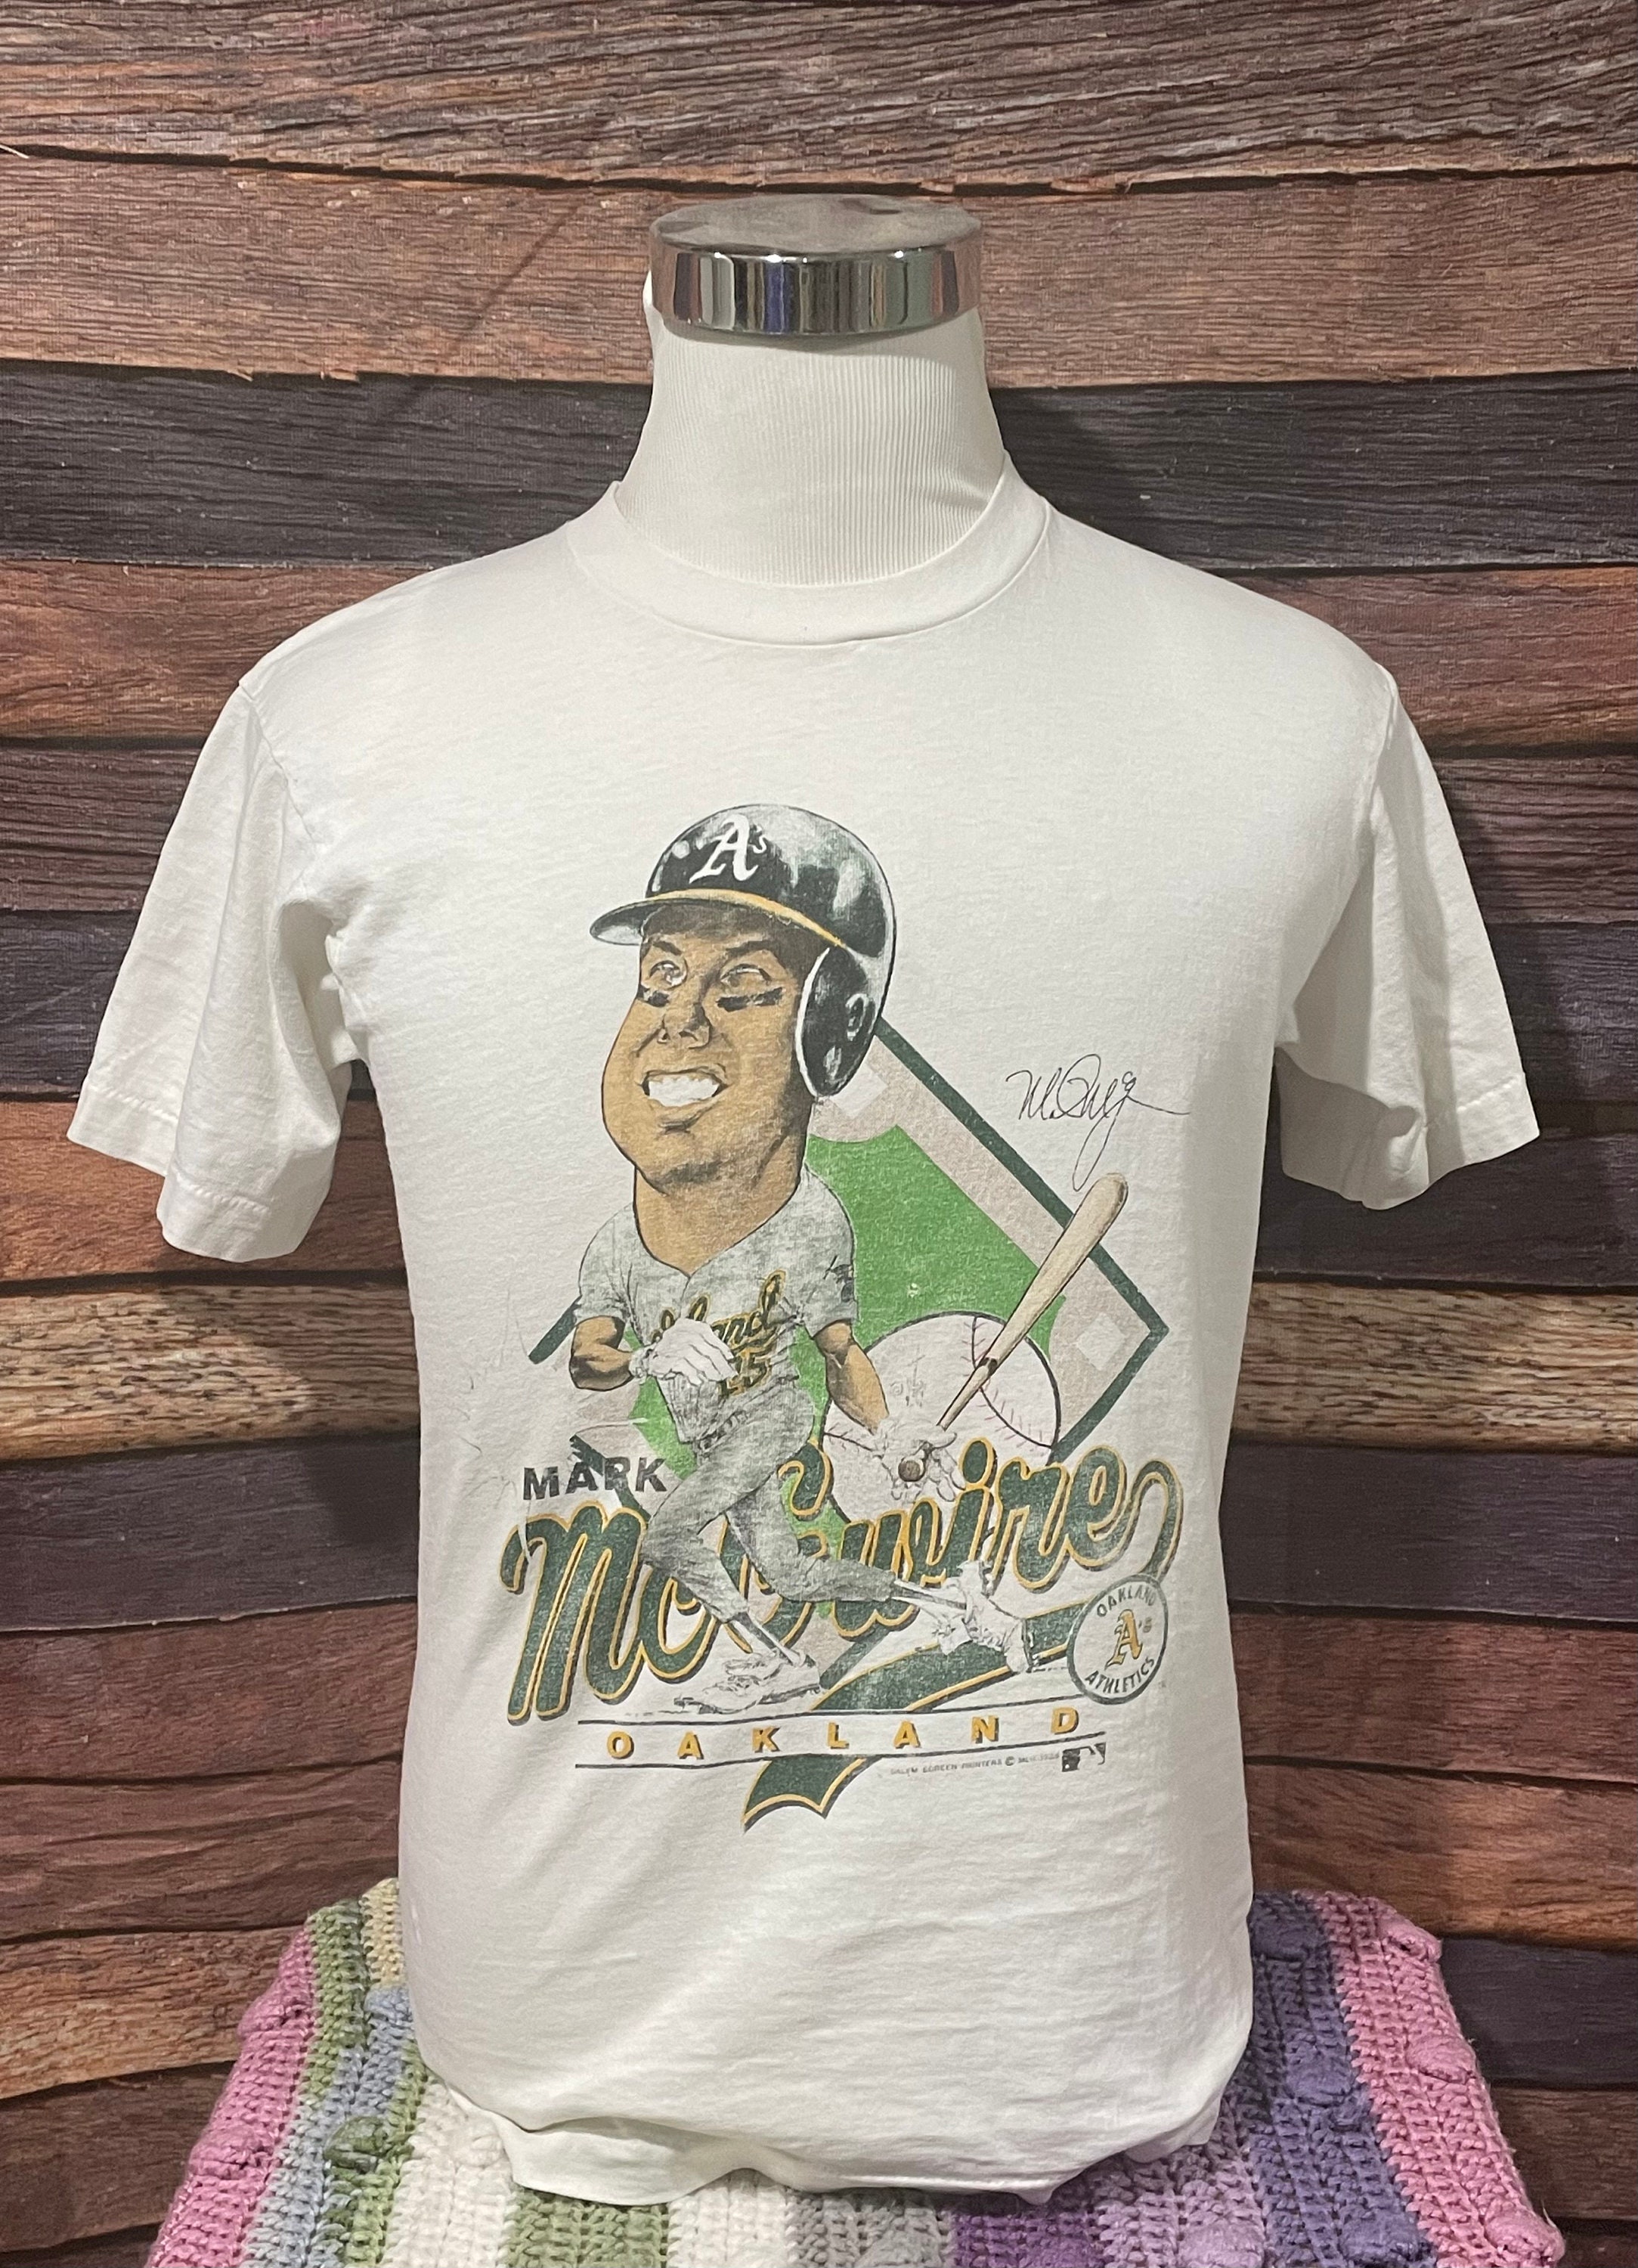 Mitchell Ness Rickey Henderson Retro Shirt Oakland Athletics Size Small NWT